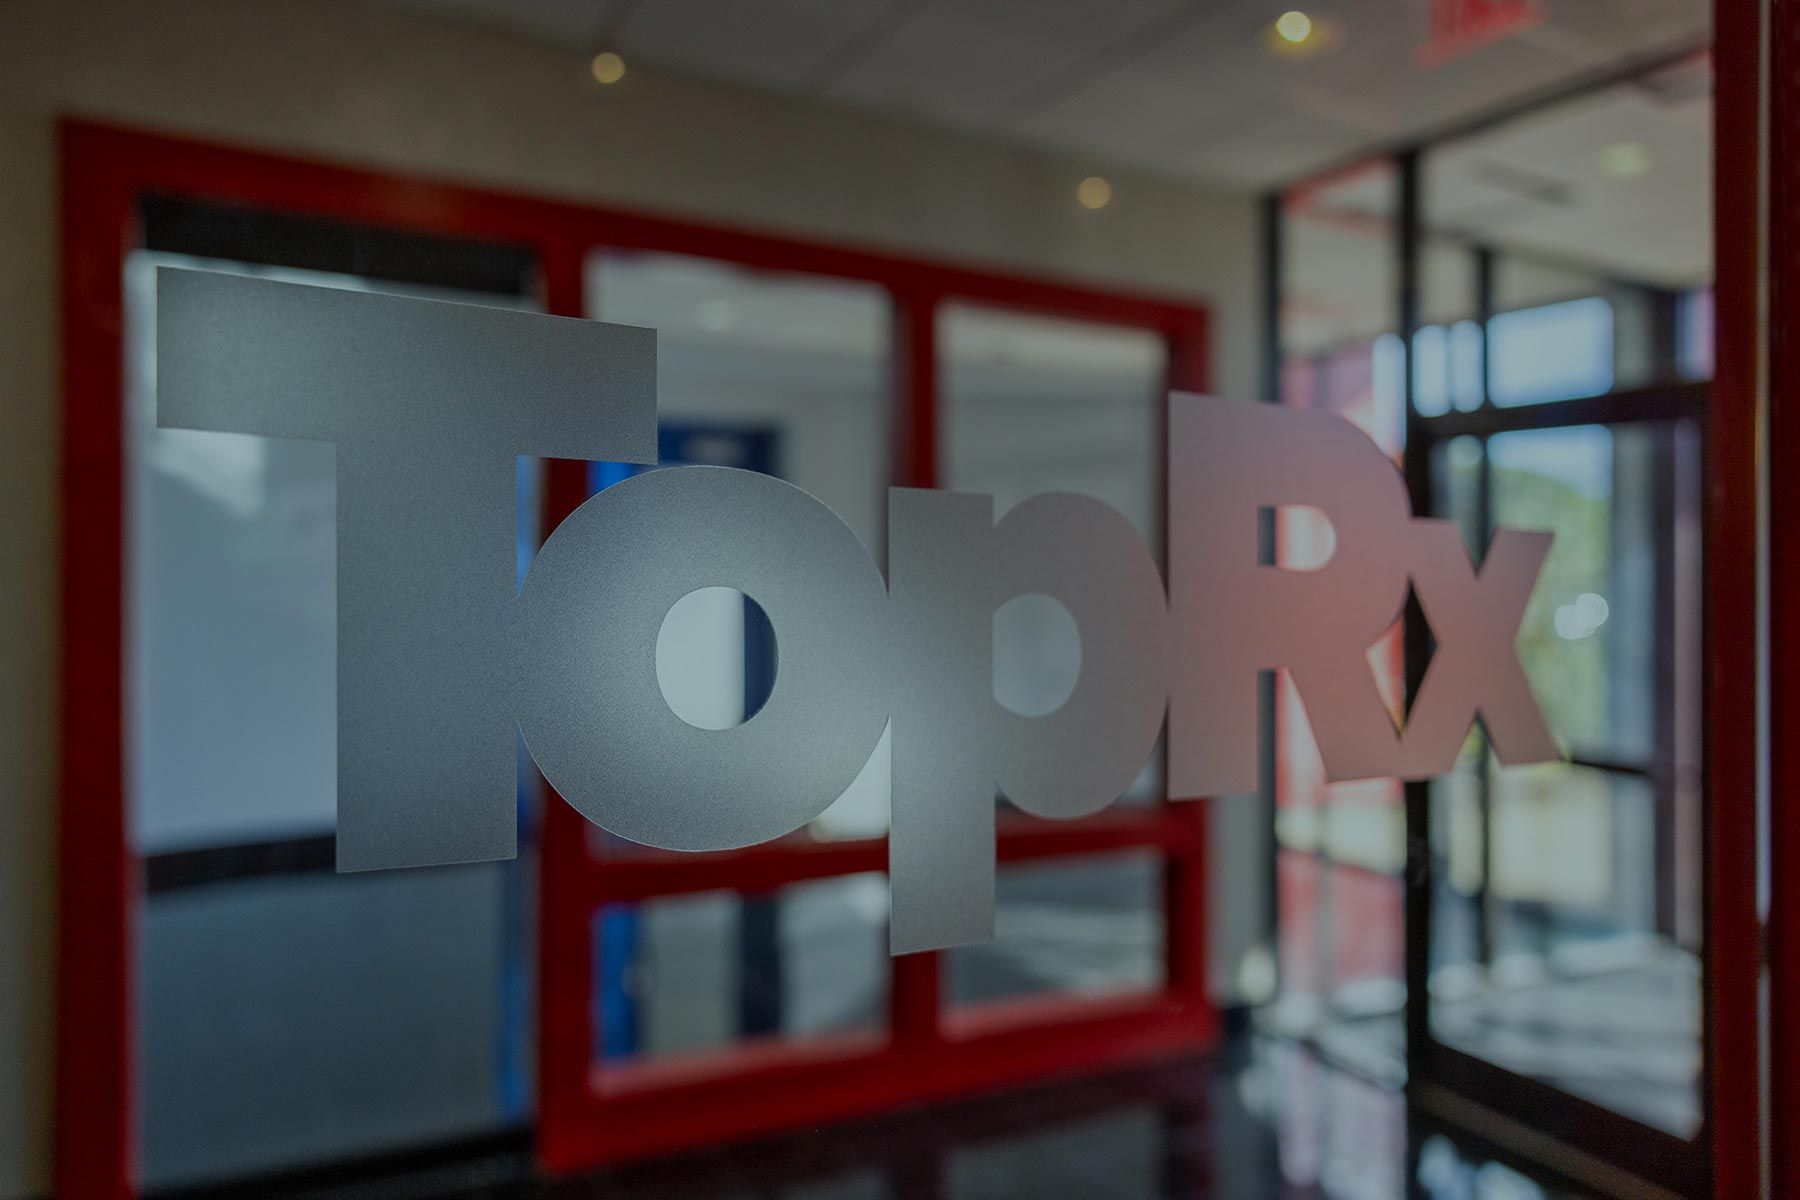 TopRx logo on office door